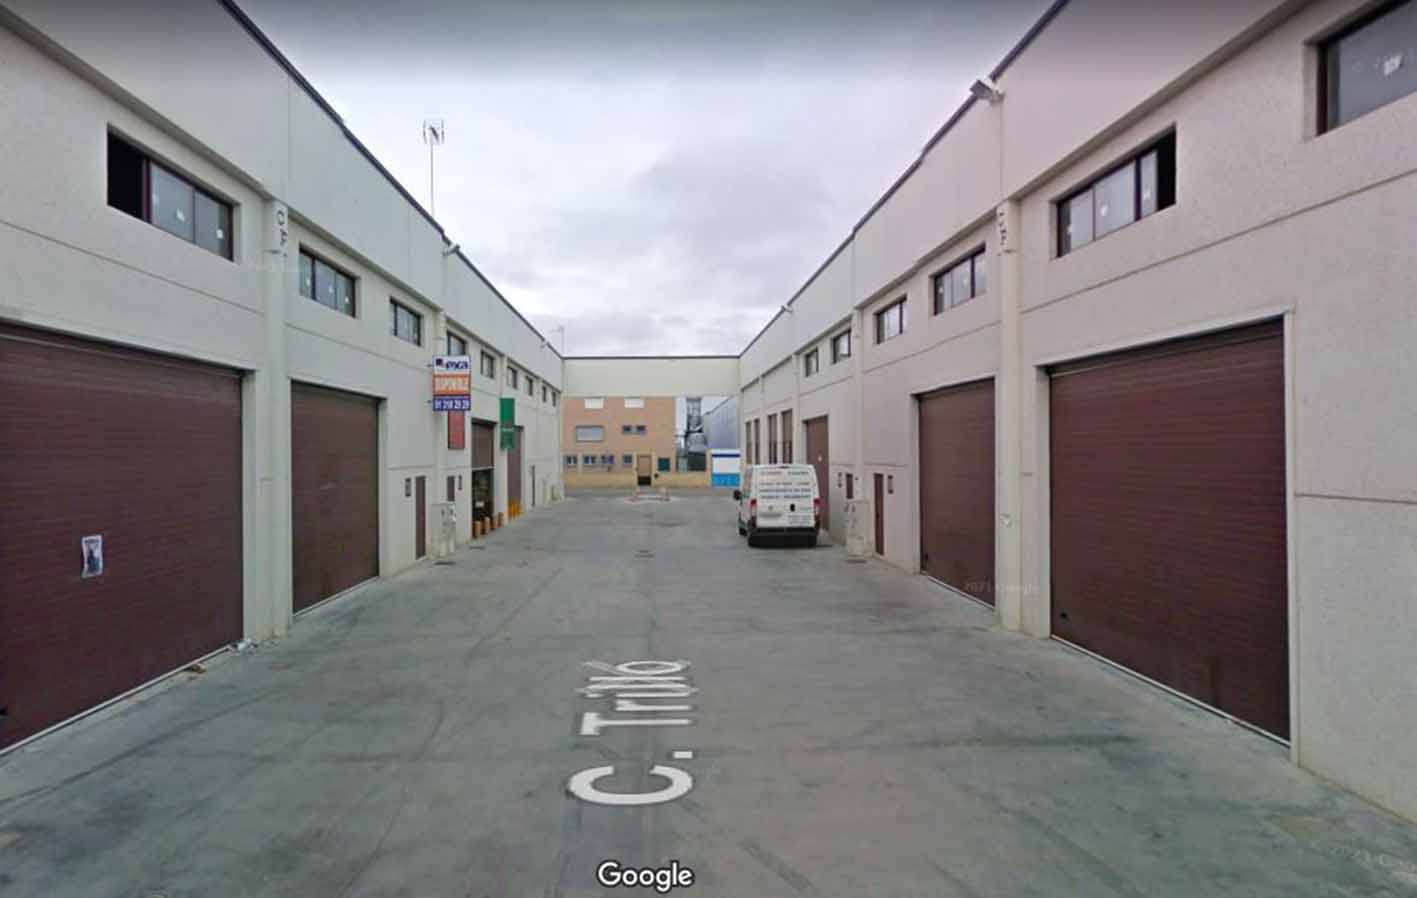 Un joven resultó herido durante una pelea en un bar de calle Trillo, en Seseña (Toledo). Imagen: Google Maps.